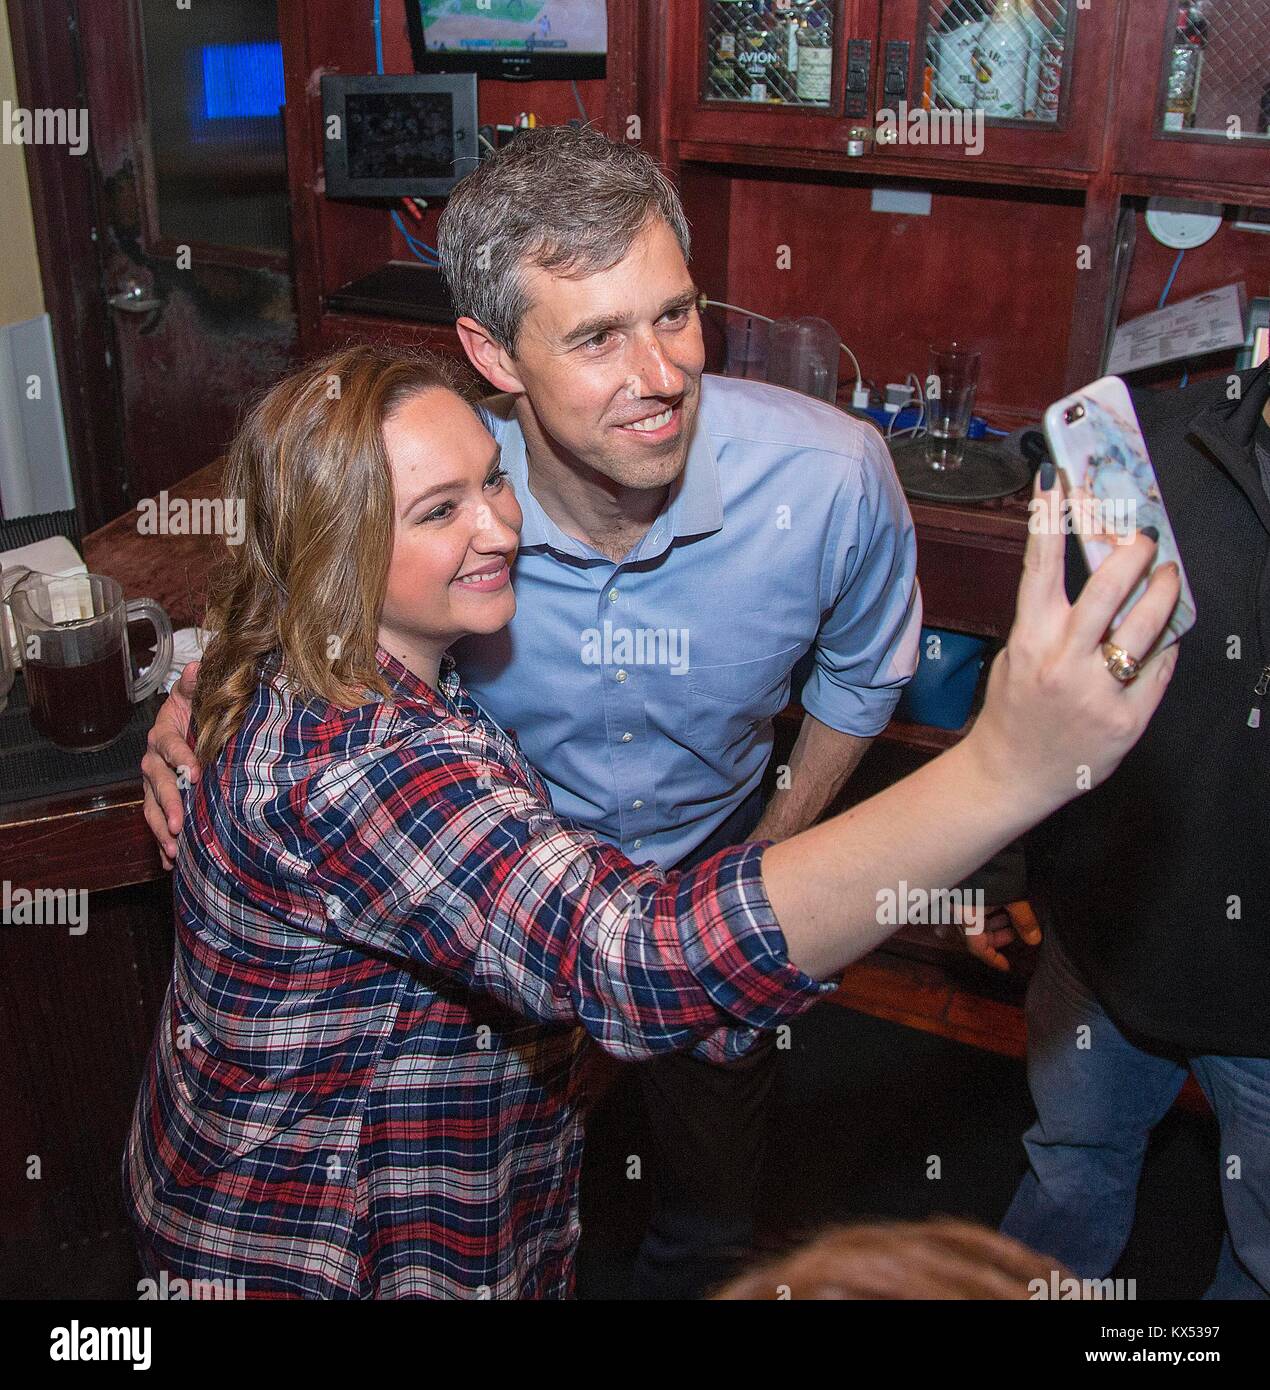 Enero 5, 2018: Rep. Beto O'Rourke, D-Texas toma una foto con un partidario durante las cervezas con Beto evento en el extremo oeste de Houston, TX. John Glaser/CSM. Foto de stock